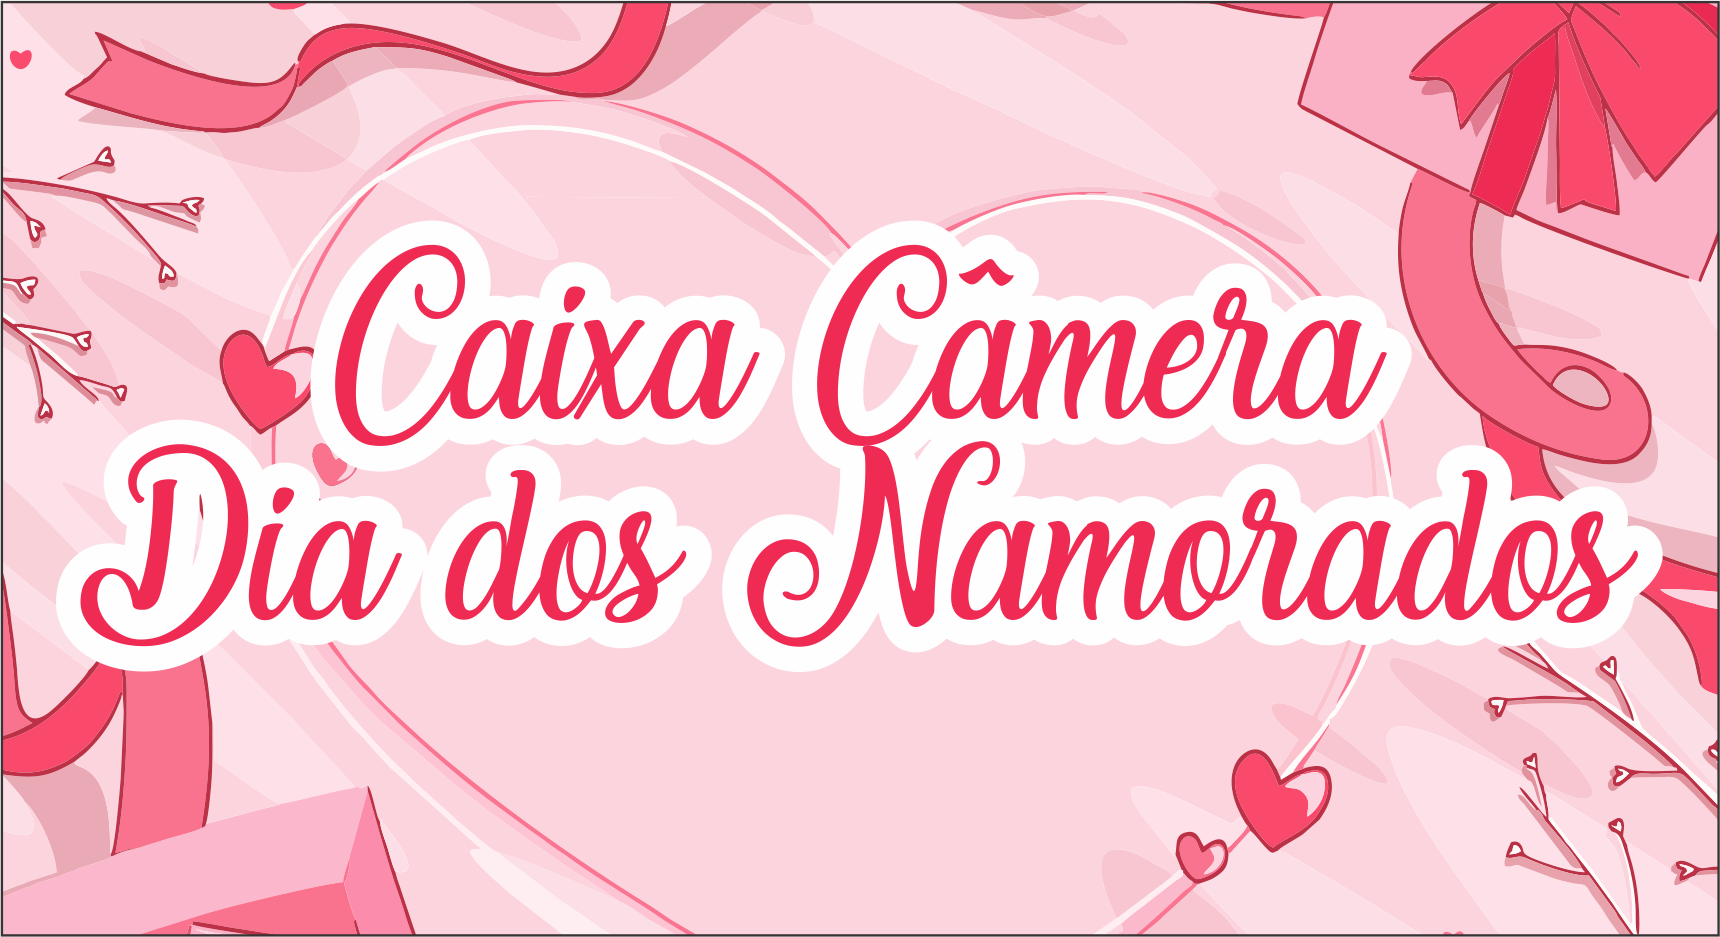 Caixa Camera Dia dos Namorados - Caixa Câmera Dia dos Namorados Grátis Pronta Para Imprimir